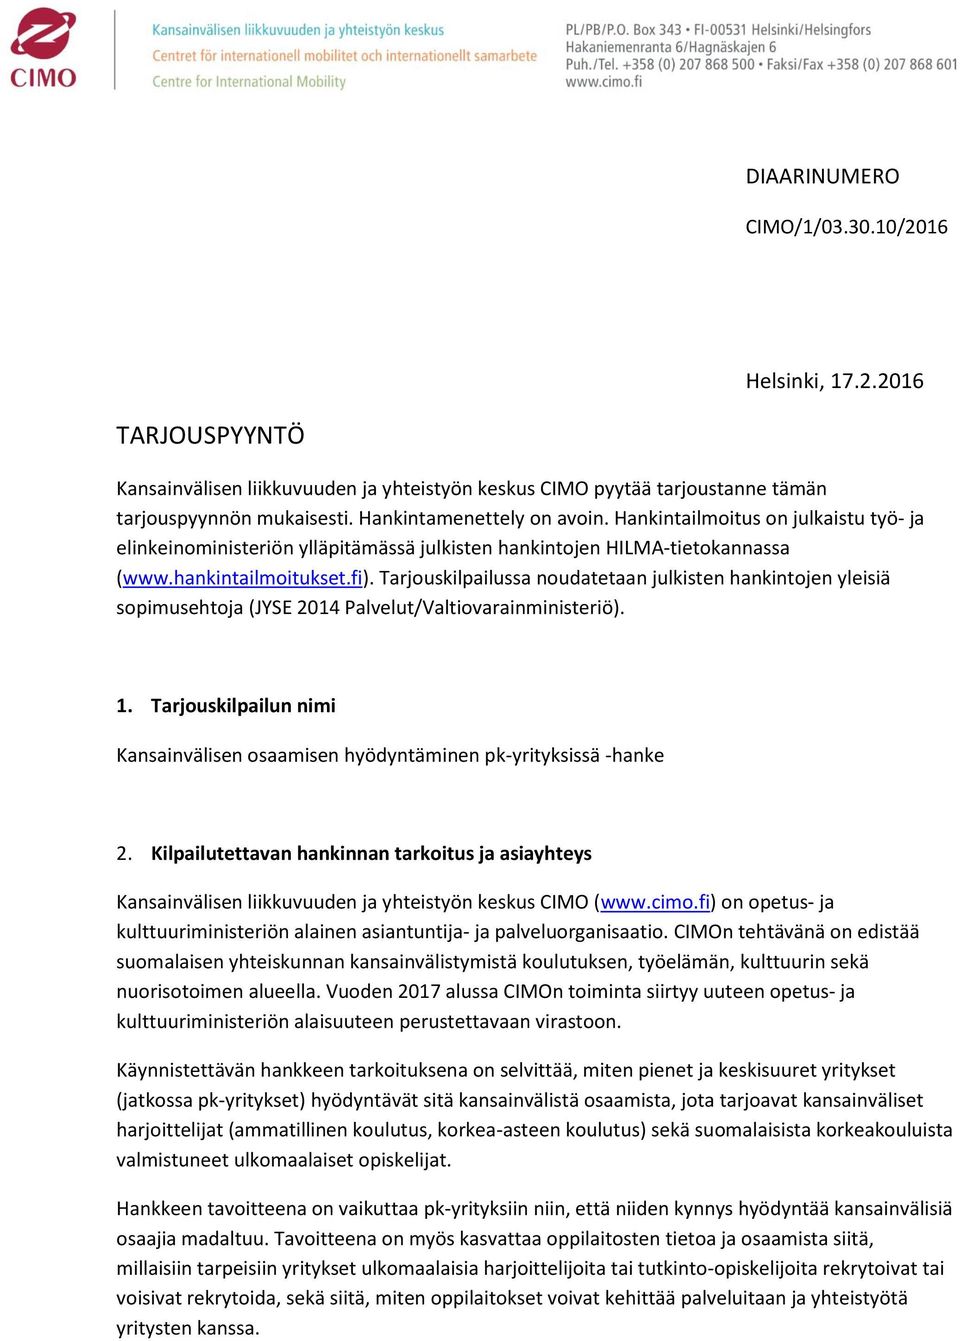 Tarjouskilpailussa noudatetaan julkisten hankintojen yleisiä sopimusehtoja (JYSE 2014 Palvelut/Valtiovarainministeriö). 1.